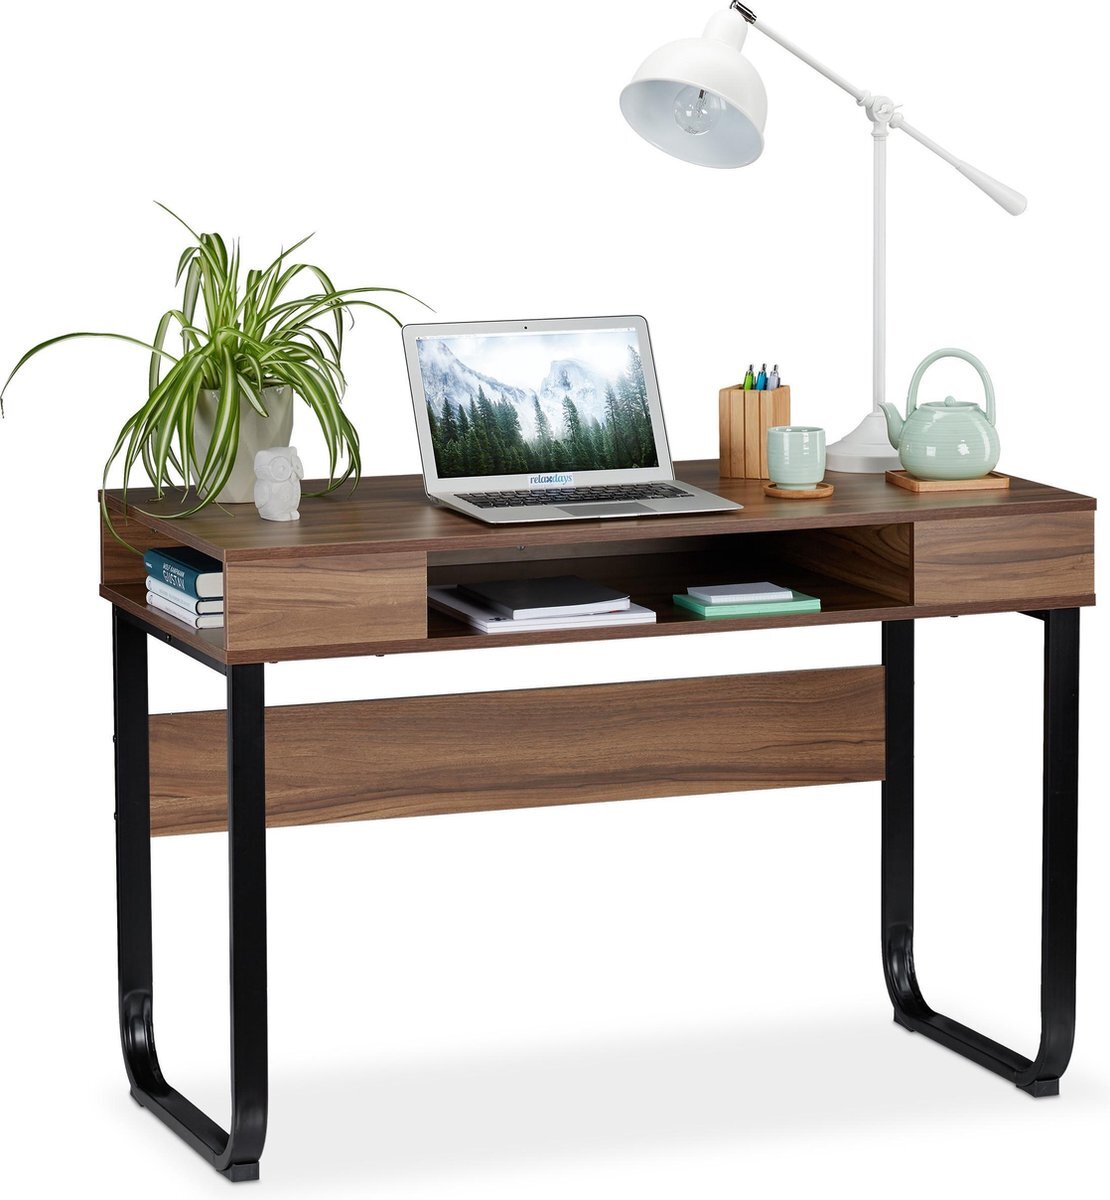 Relaxdays bureau - computertafel - modern design - open vakken - laptopbureau / zwart bureau | Kieskeurig.be | helpt je kiezen